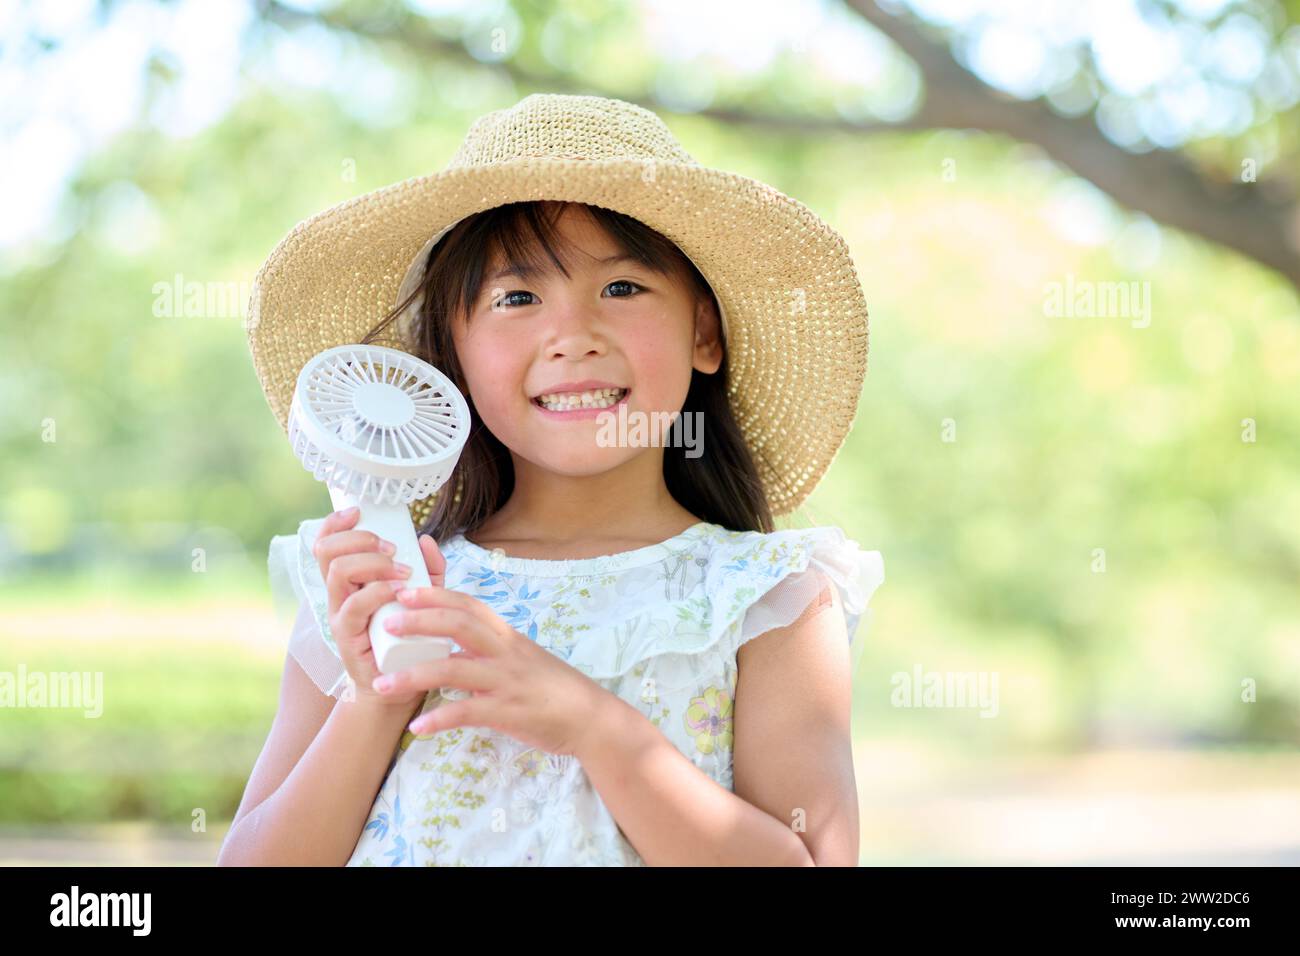 Une petite fille dans un chapeau tenant un éventail Banque D'Images